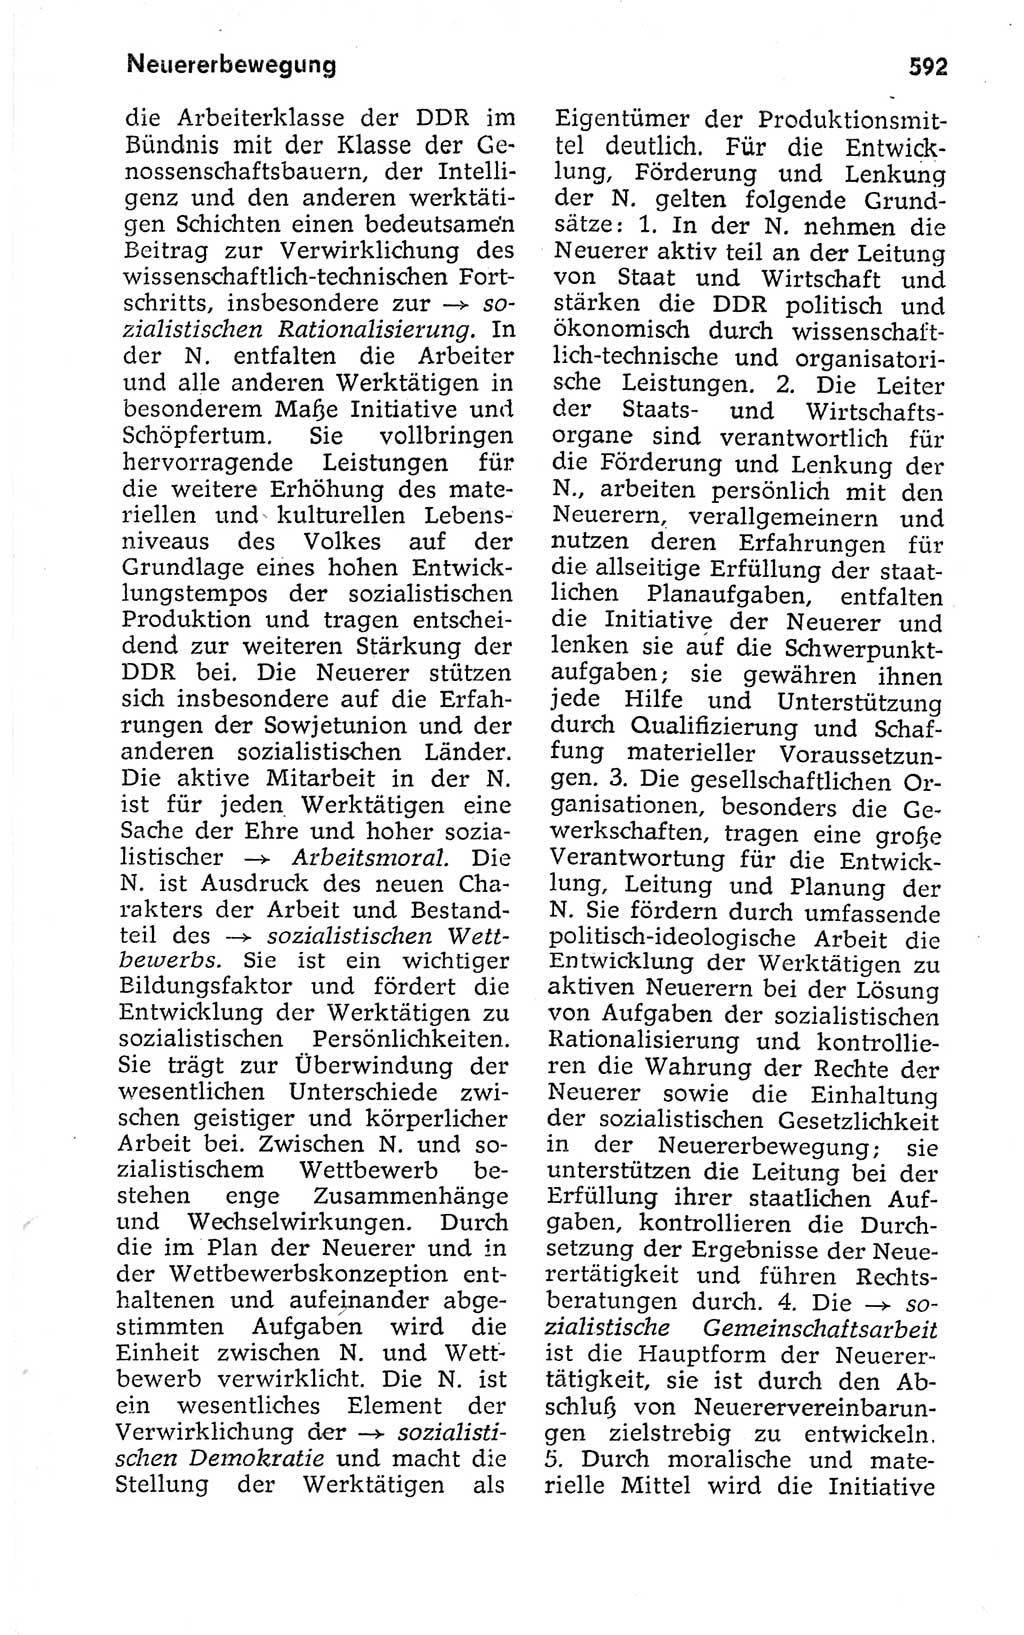 Kleines politisches Wörterbuch [Deutsche Demokratische Republik (DDR)] 1973, Seite 592 (Kl. pol. Wb. DDR 1973, S. 592)